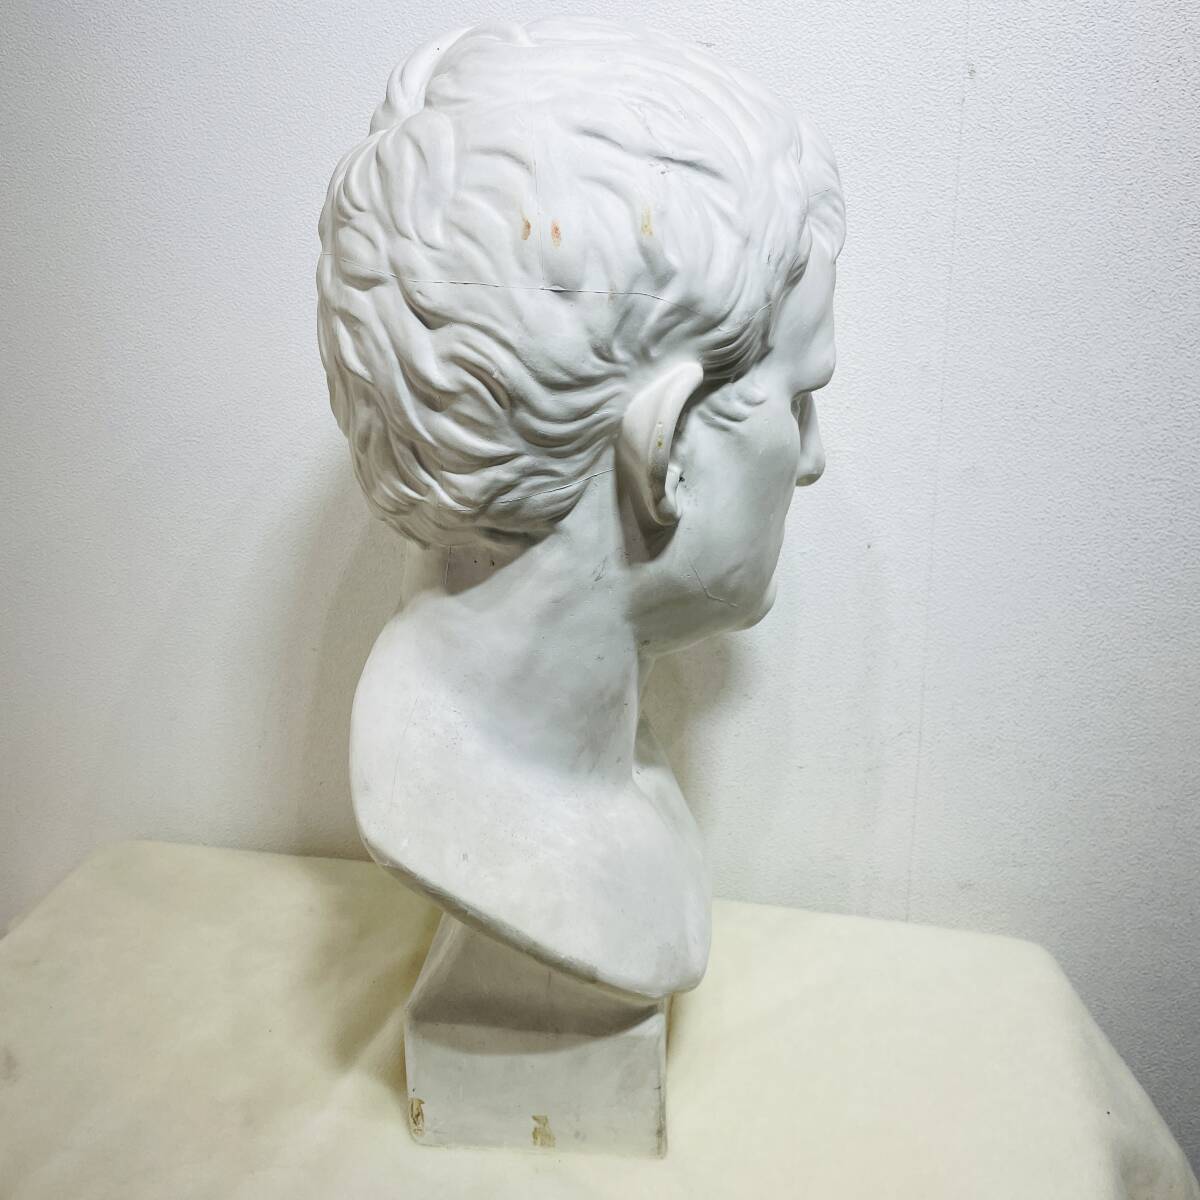 アグリッパ石膏像  高さ約59ｃｍ  重さ8.5Ｋg  大型  デッサン 彫刻 美術 置物 オブジェ 石膏 西洋彫刻 彫刻  刻印あり  XZ2951の画像9